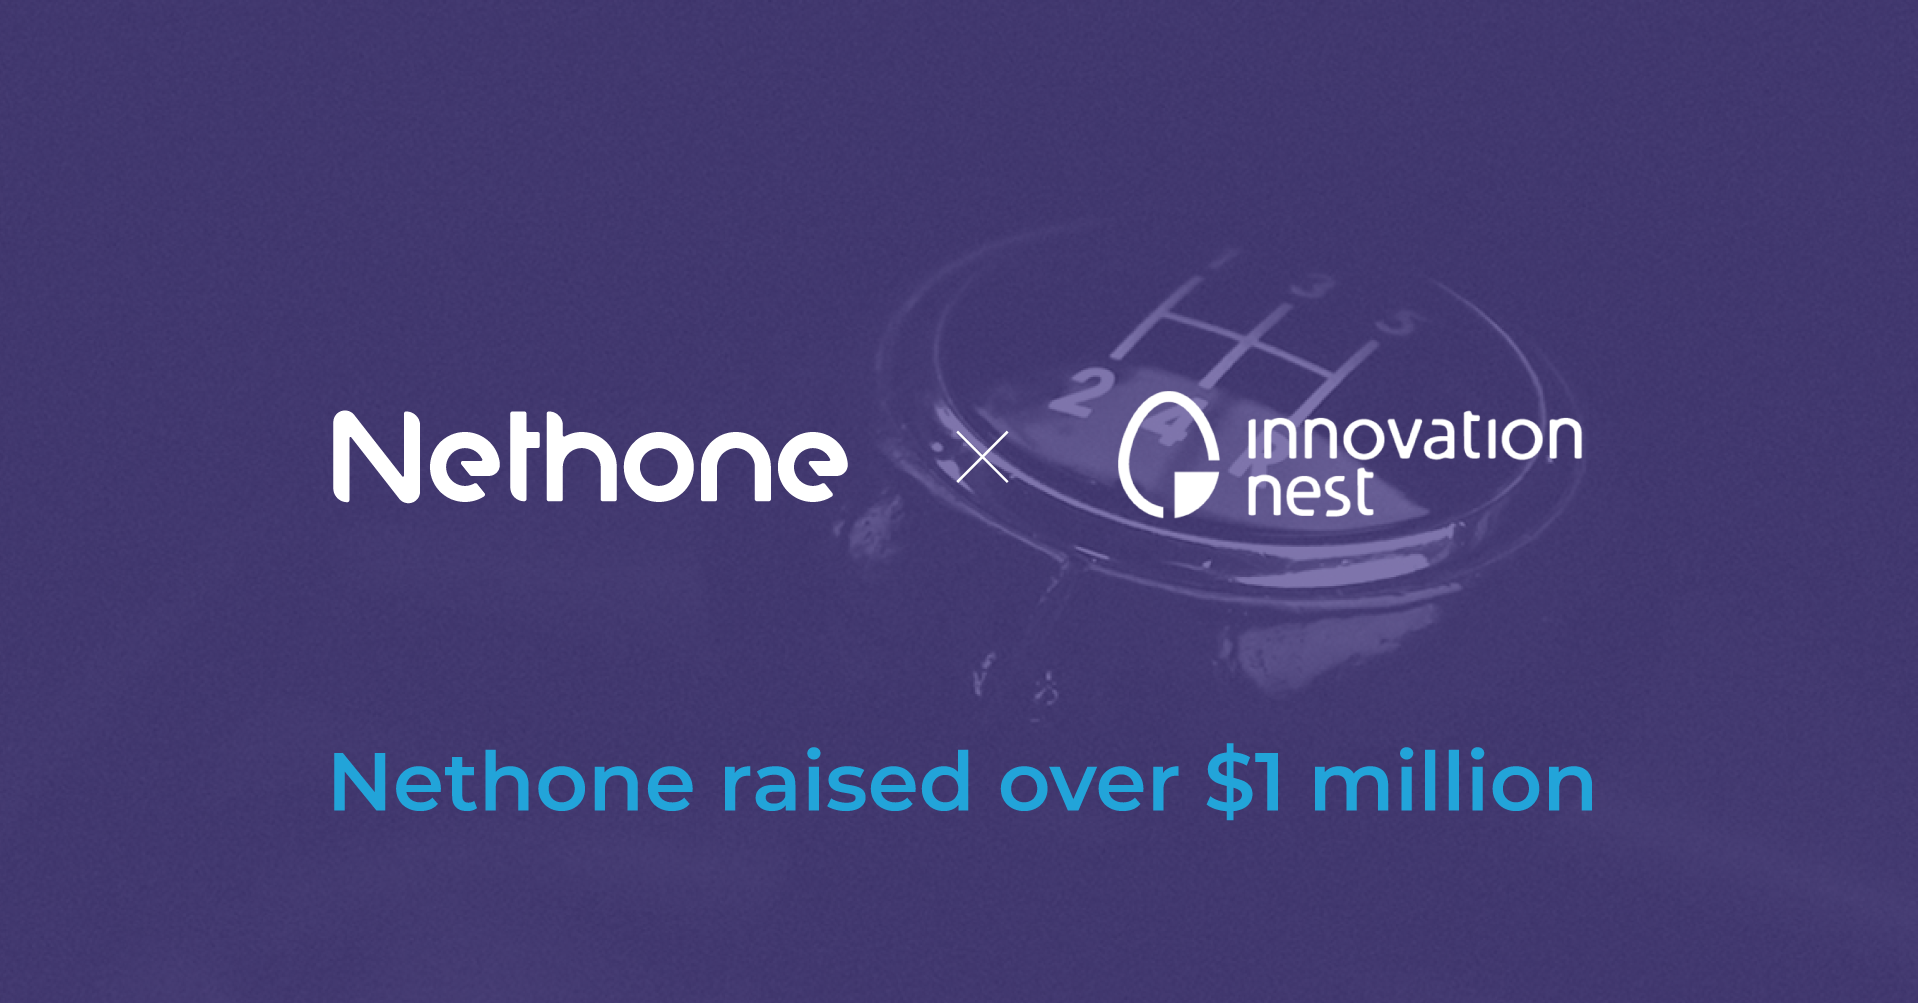 Nethone x Innovation Nest